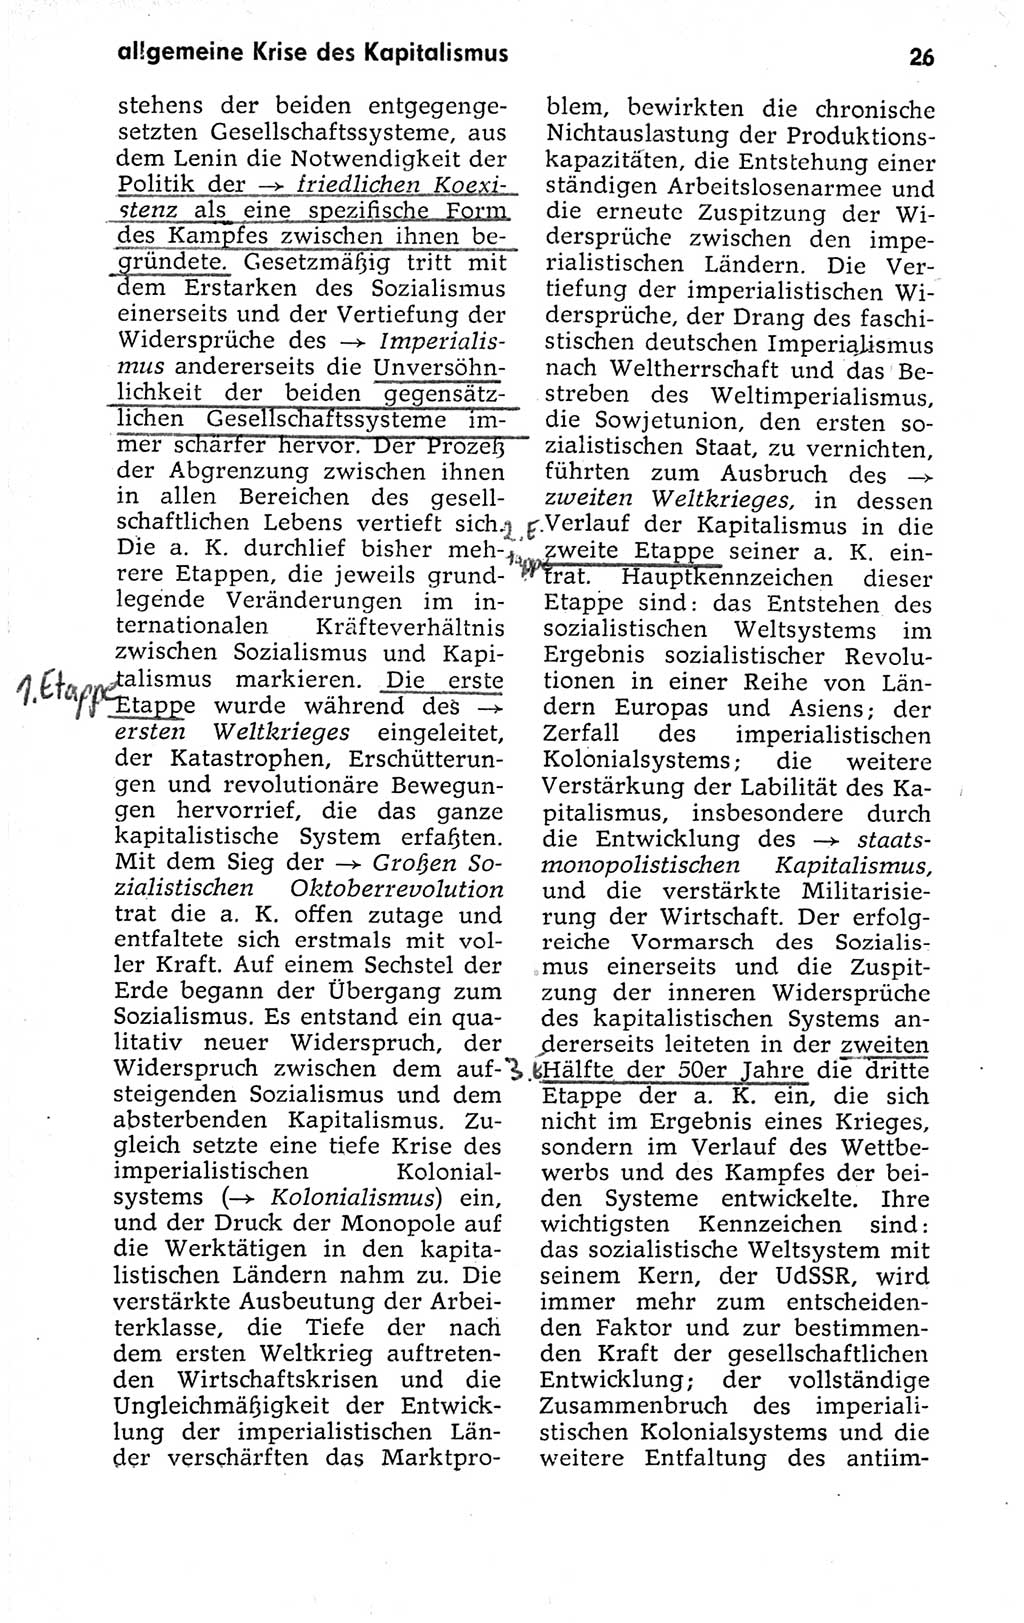 Kleines politisches Wörterbuch [Deutsche Demokratische Republik (DDR)] 1973, Seite 26 (Kl. pol. Wb. DDR 1973, S. 26)